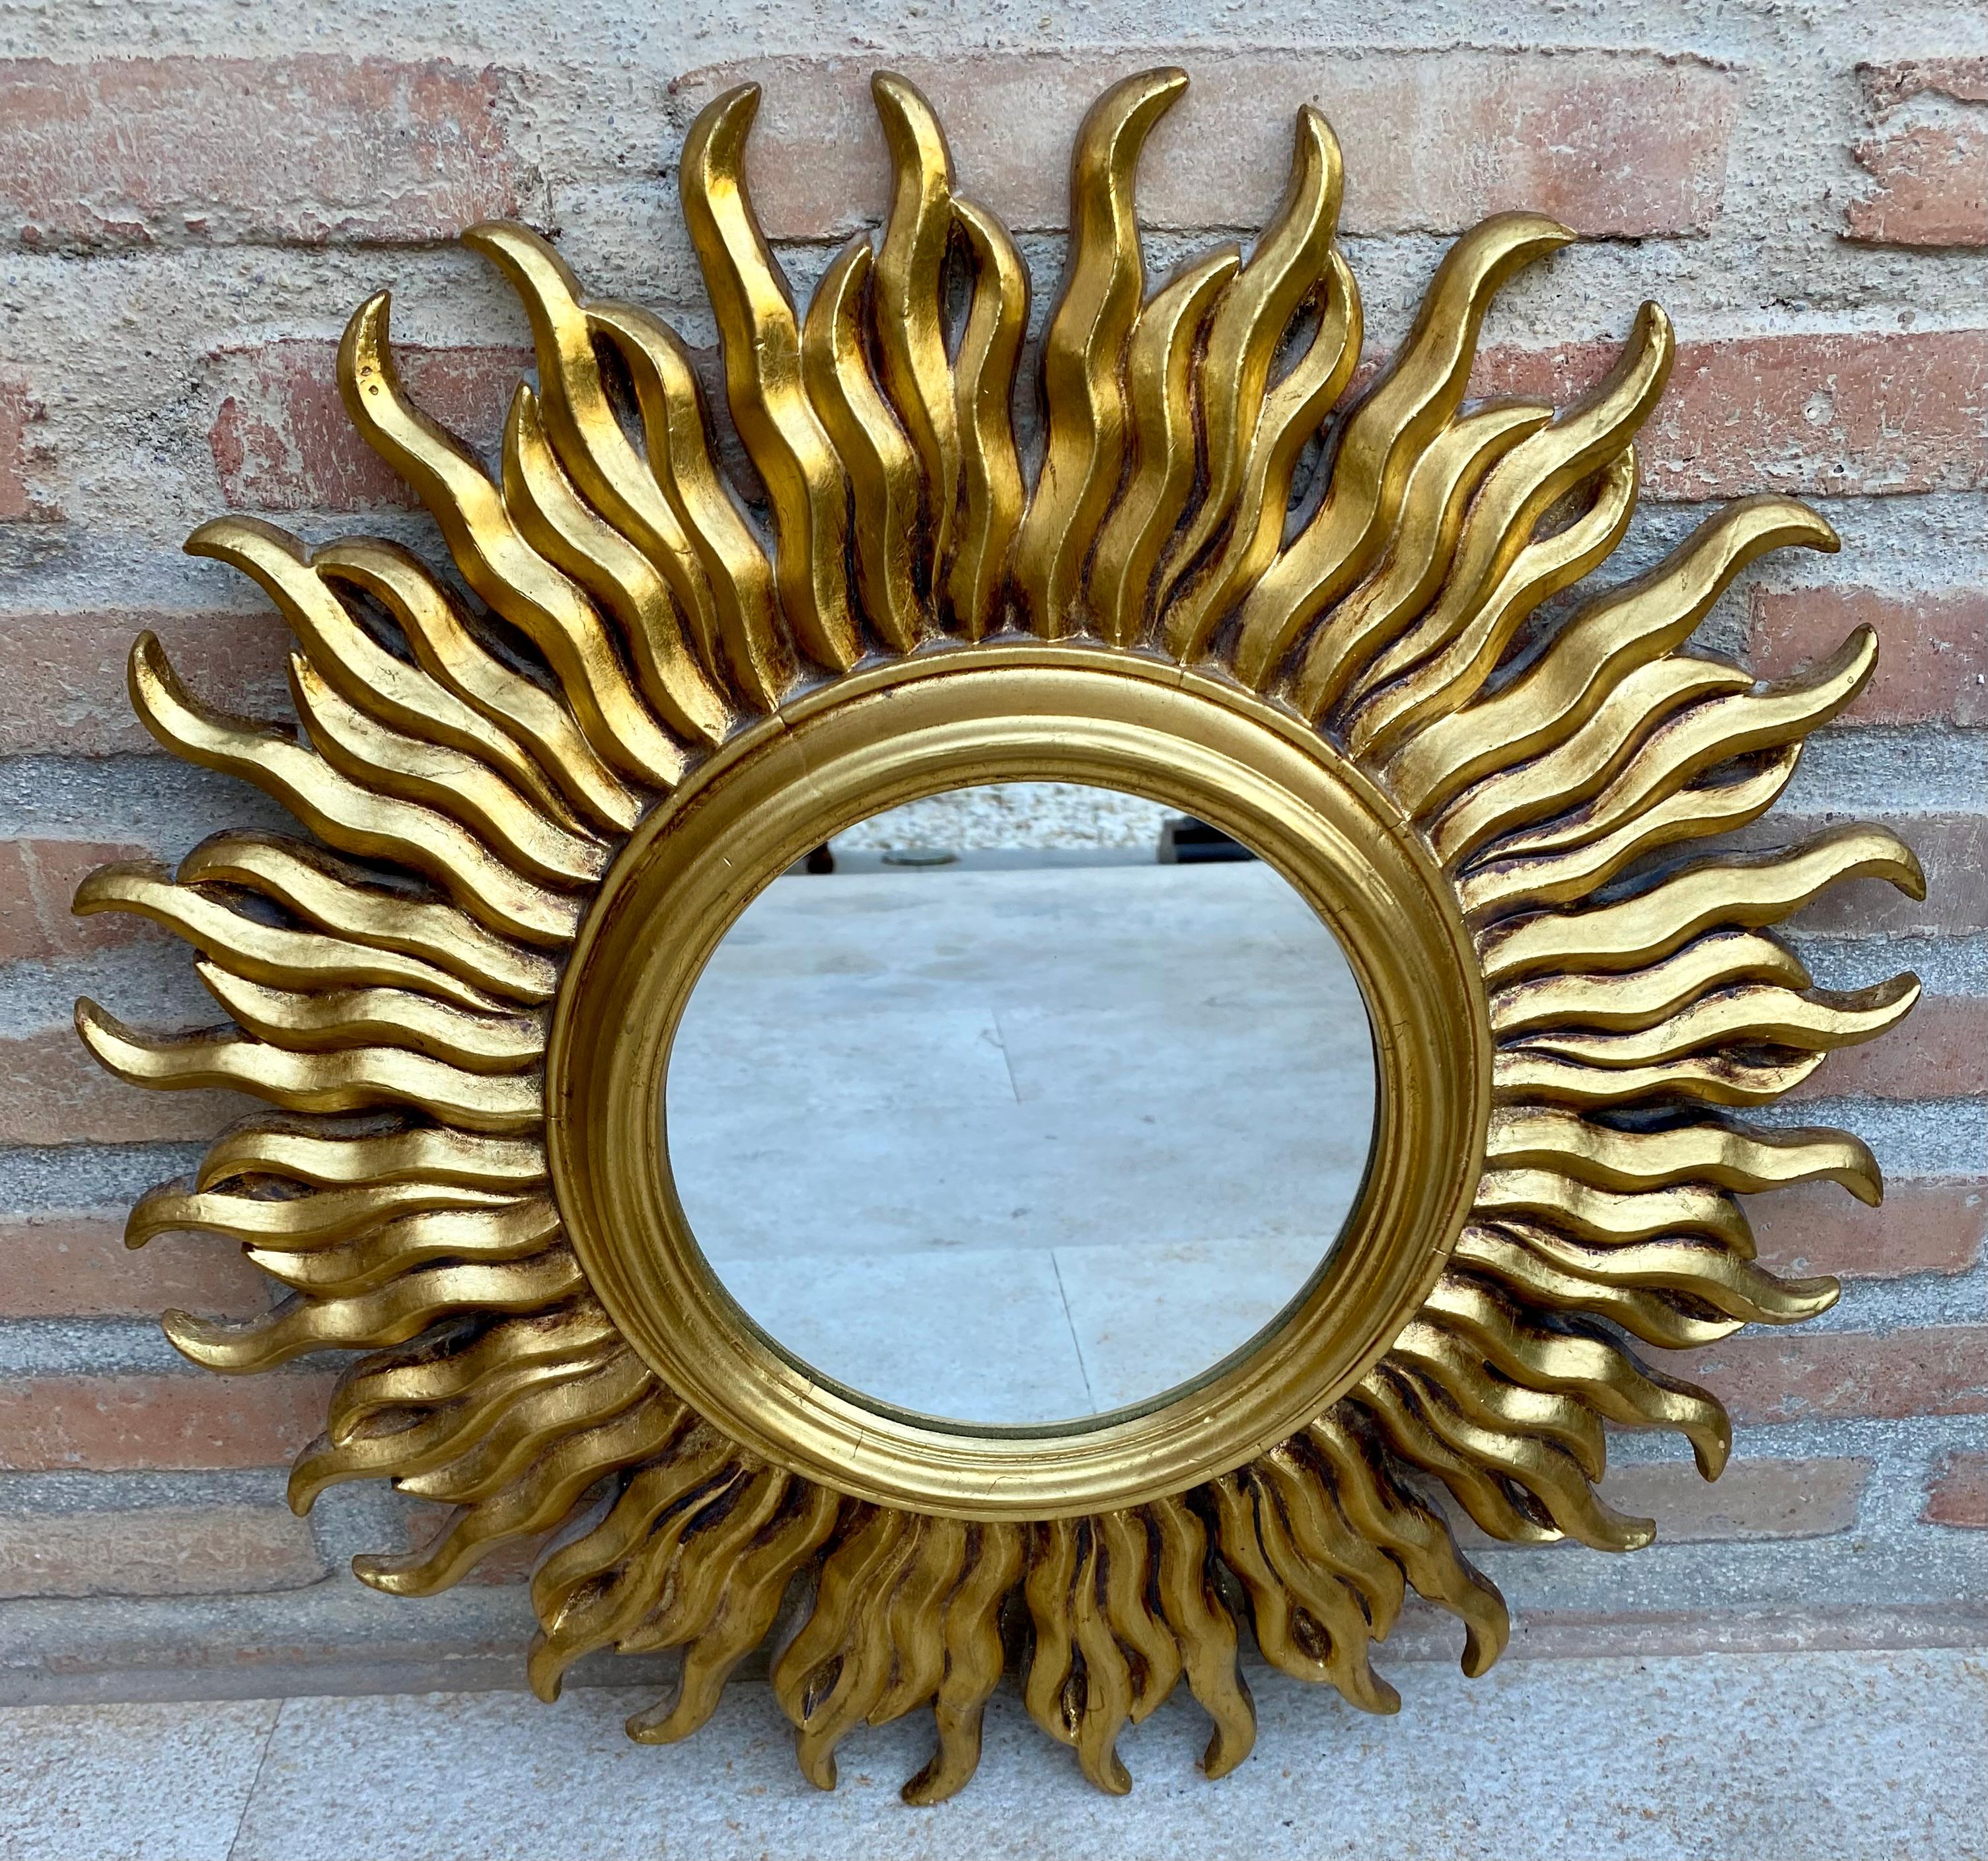 Mitte 20. Französisch Jahrhundert Sunburst Spiegel in Gold.
Spiegel mit Sonnenschliff und Vergoldung aus Frankreich, Mitte des Jahrhunderts.